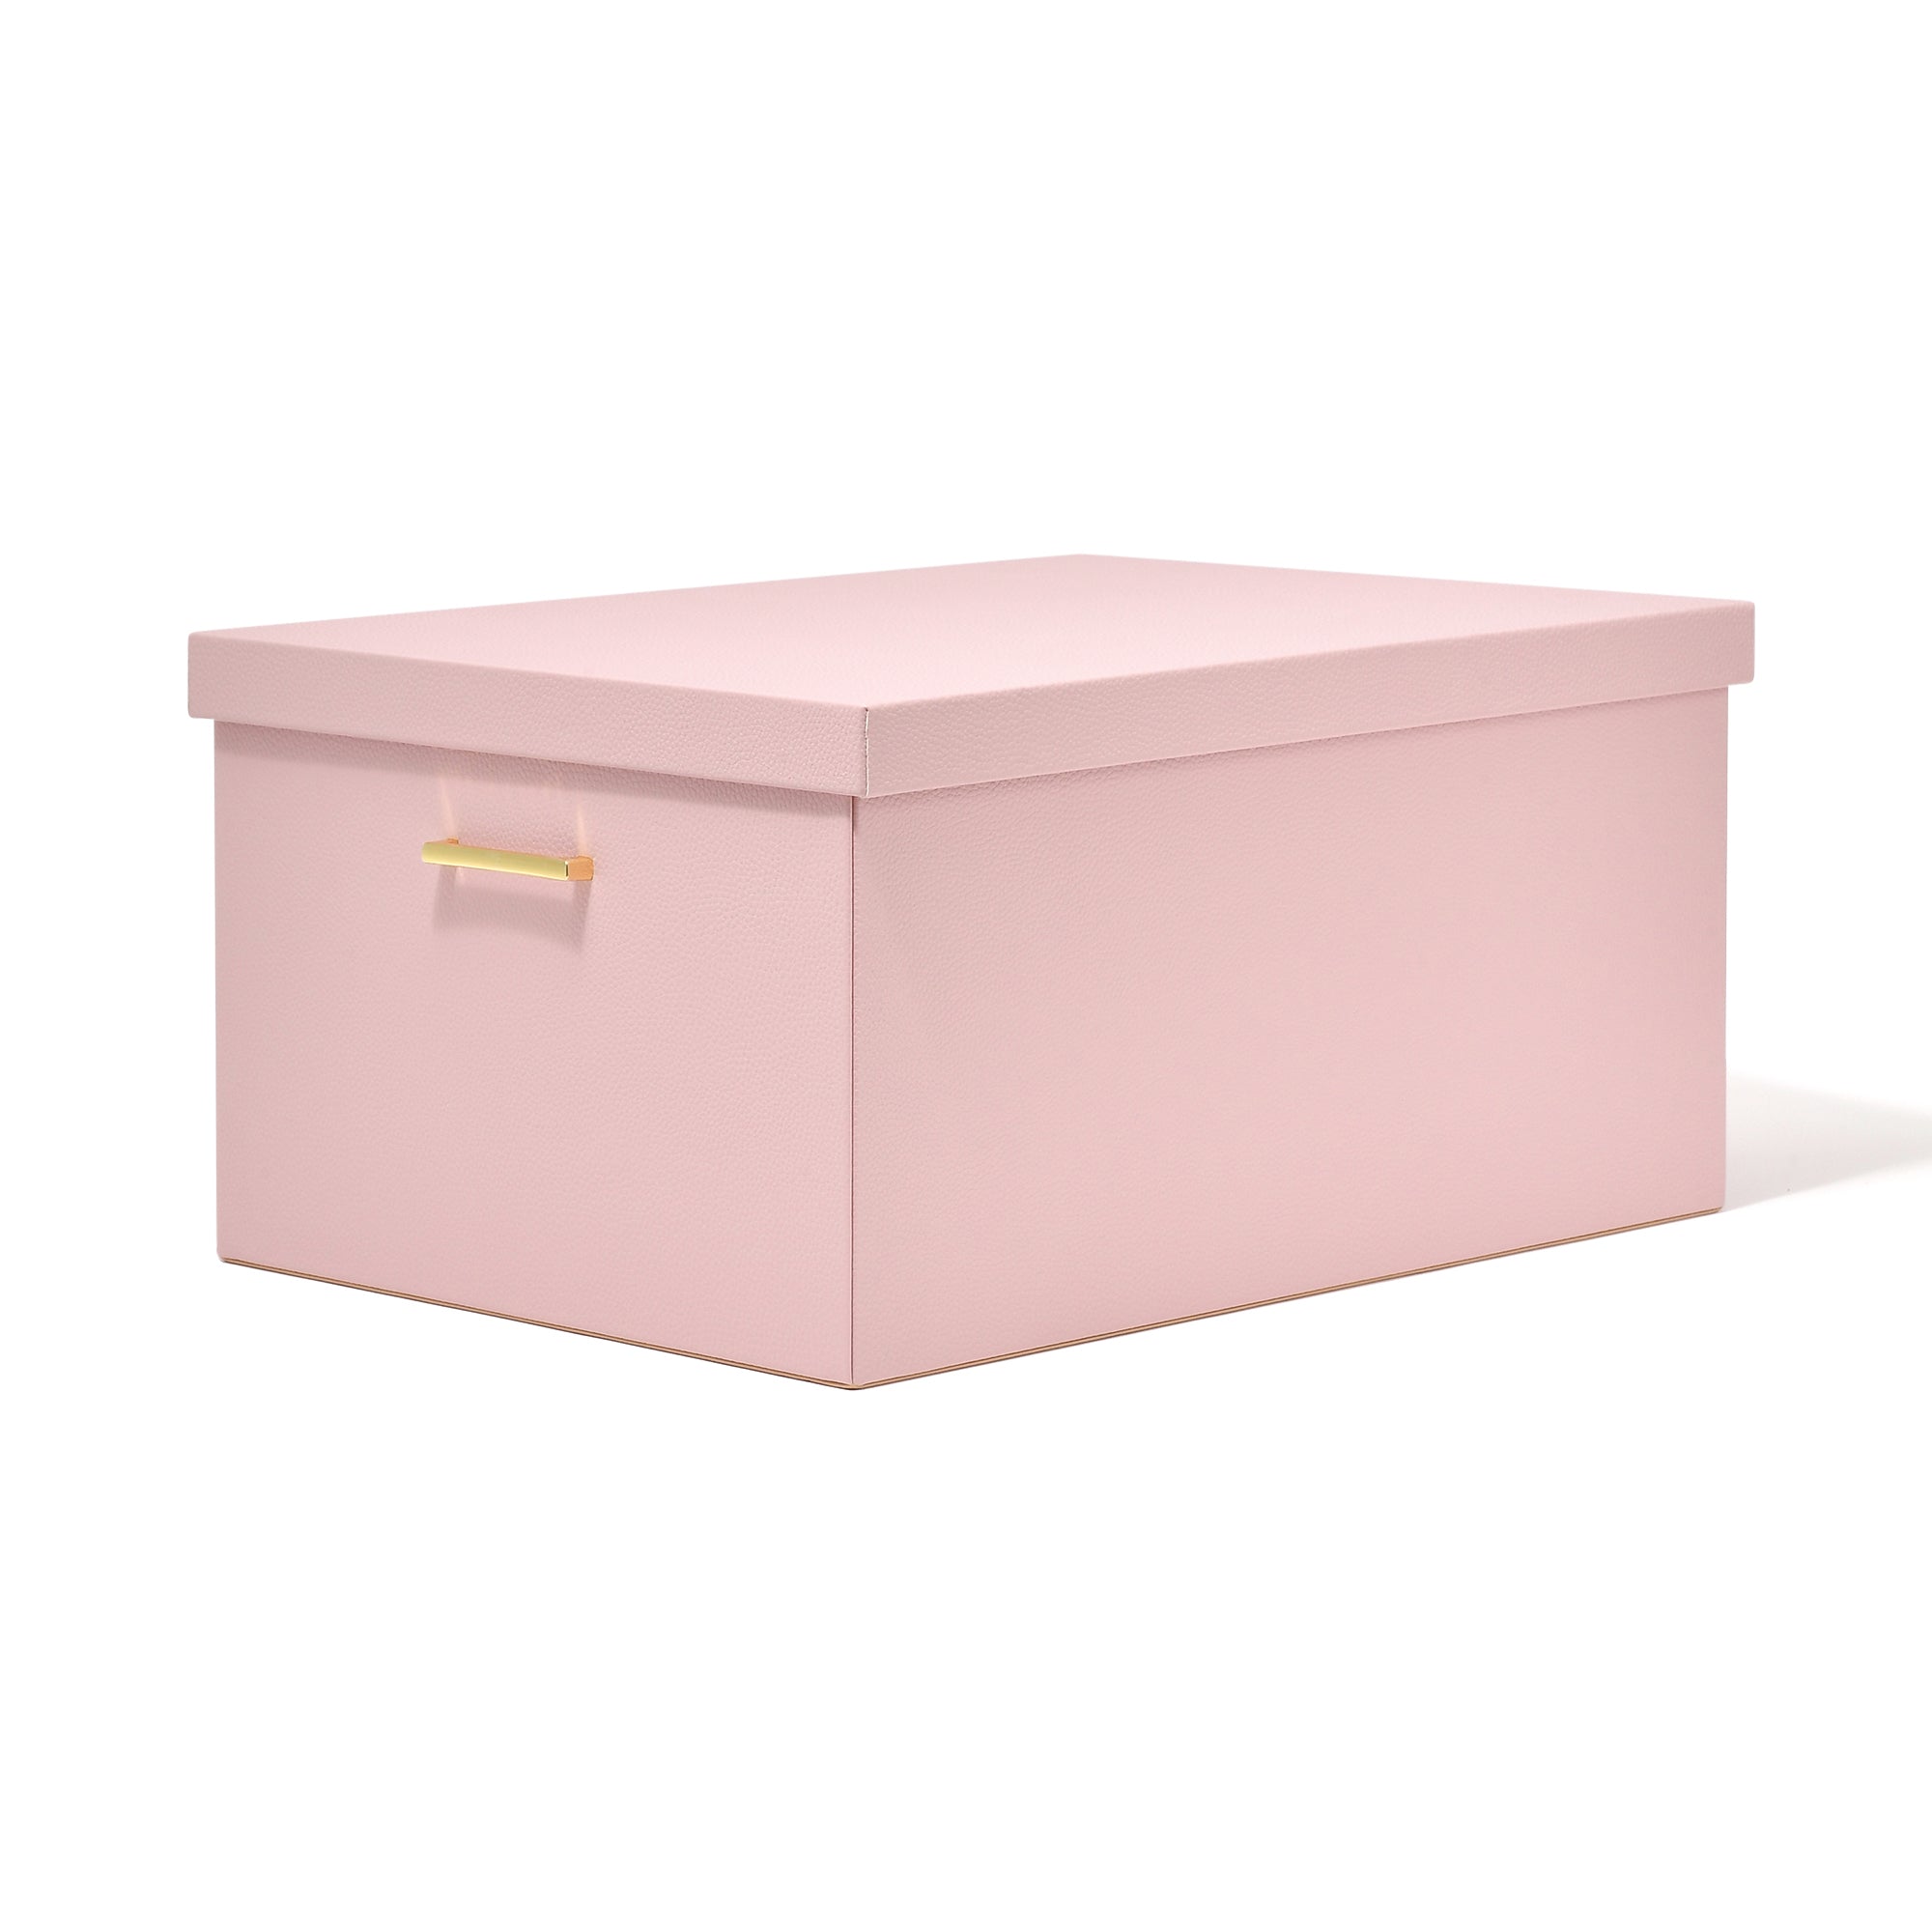 프랑프랑 일본 프리레 대형 박스 330×520 핑크